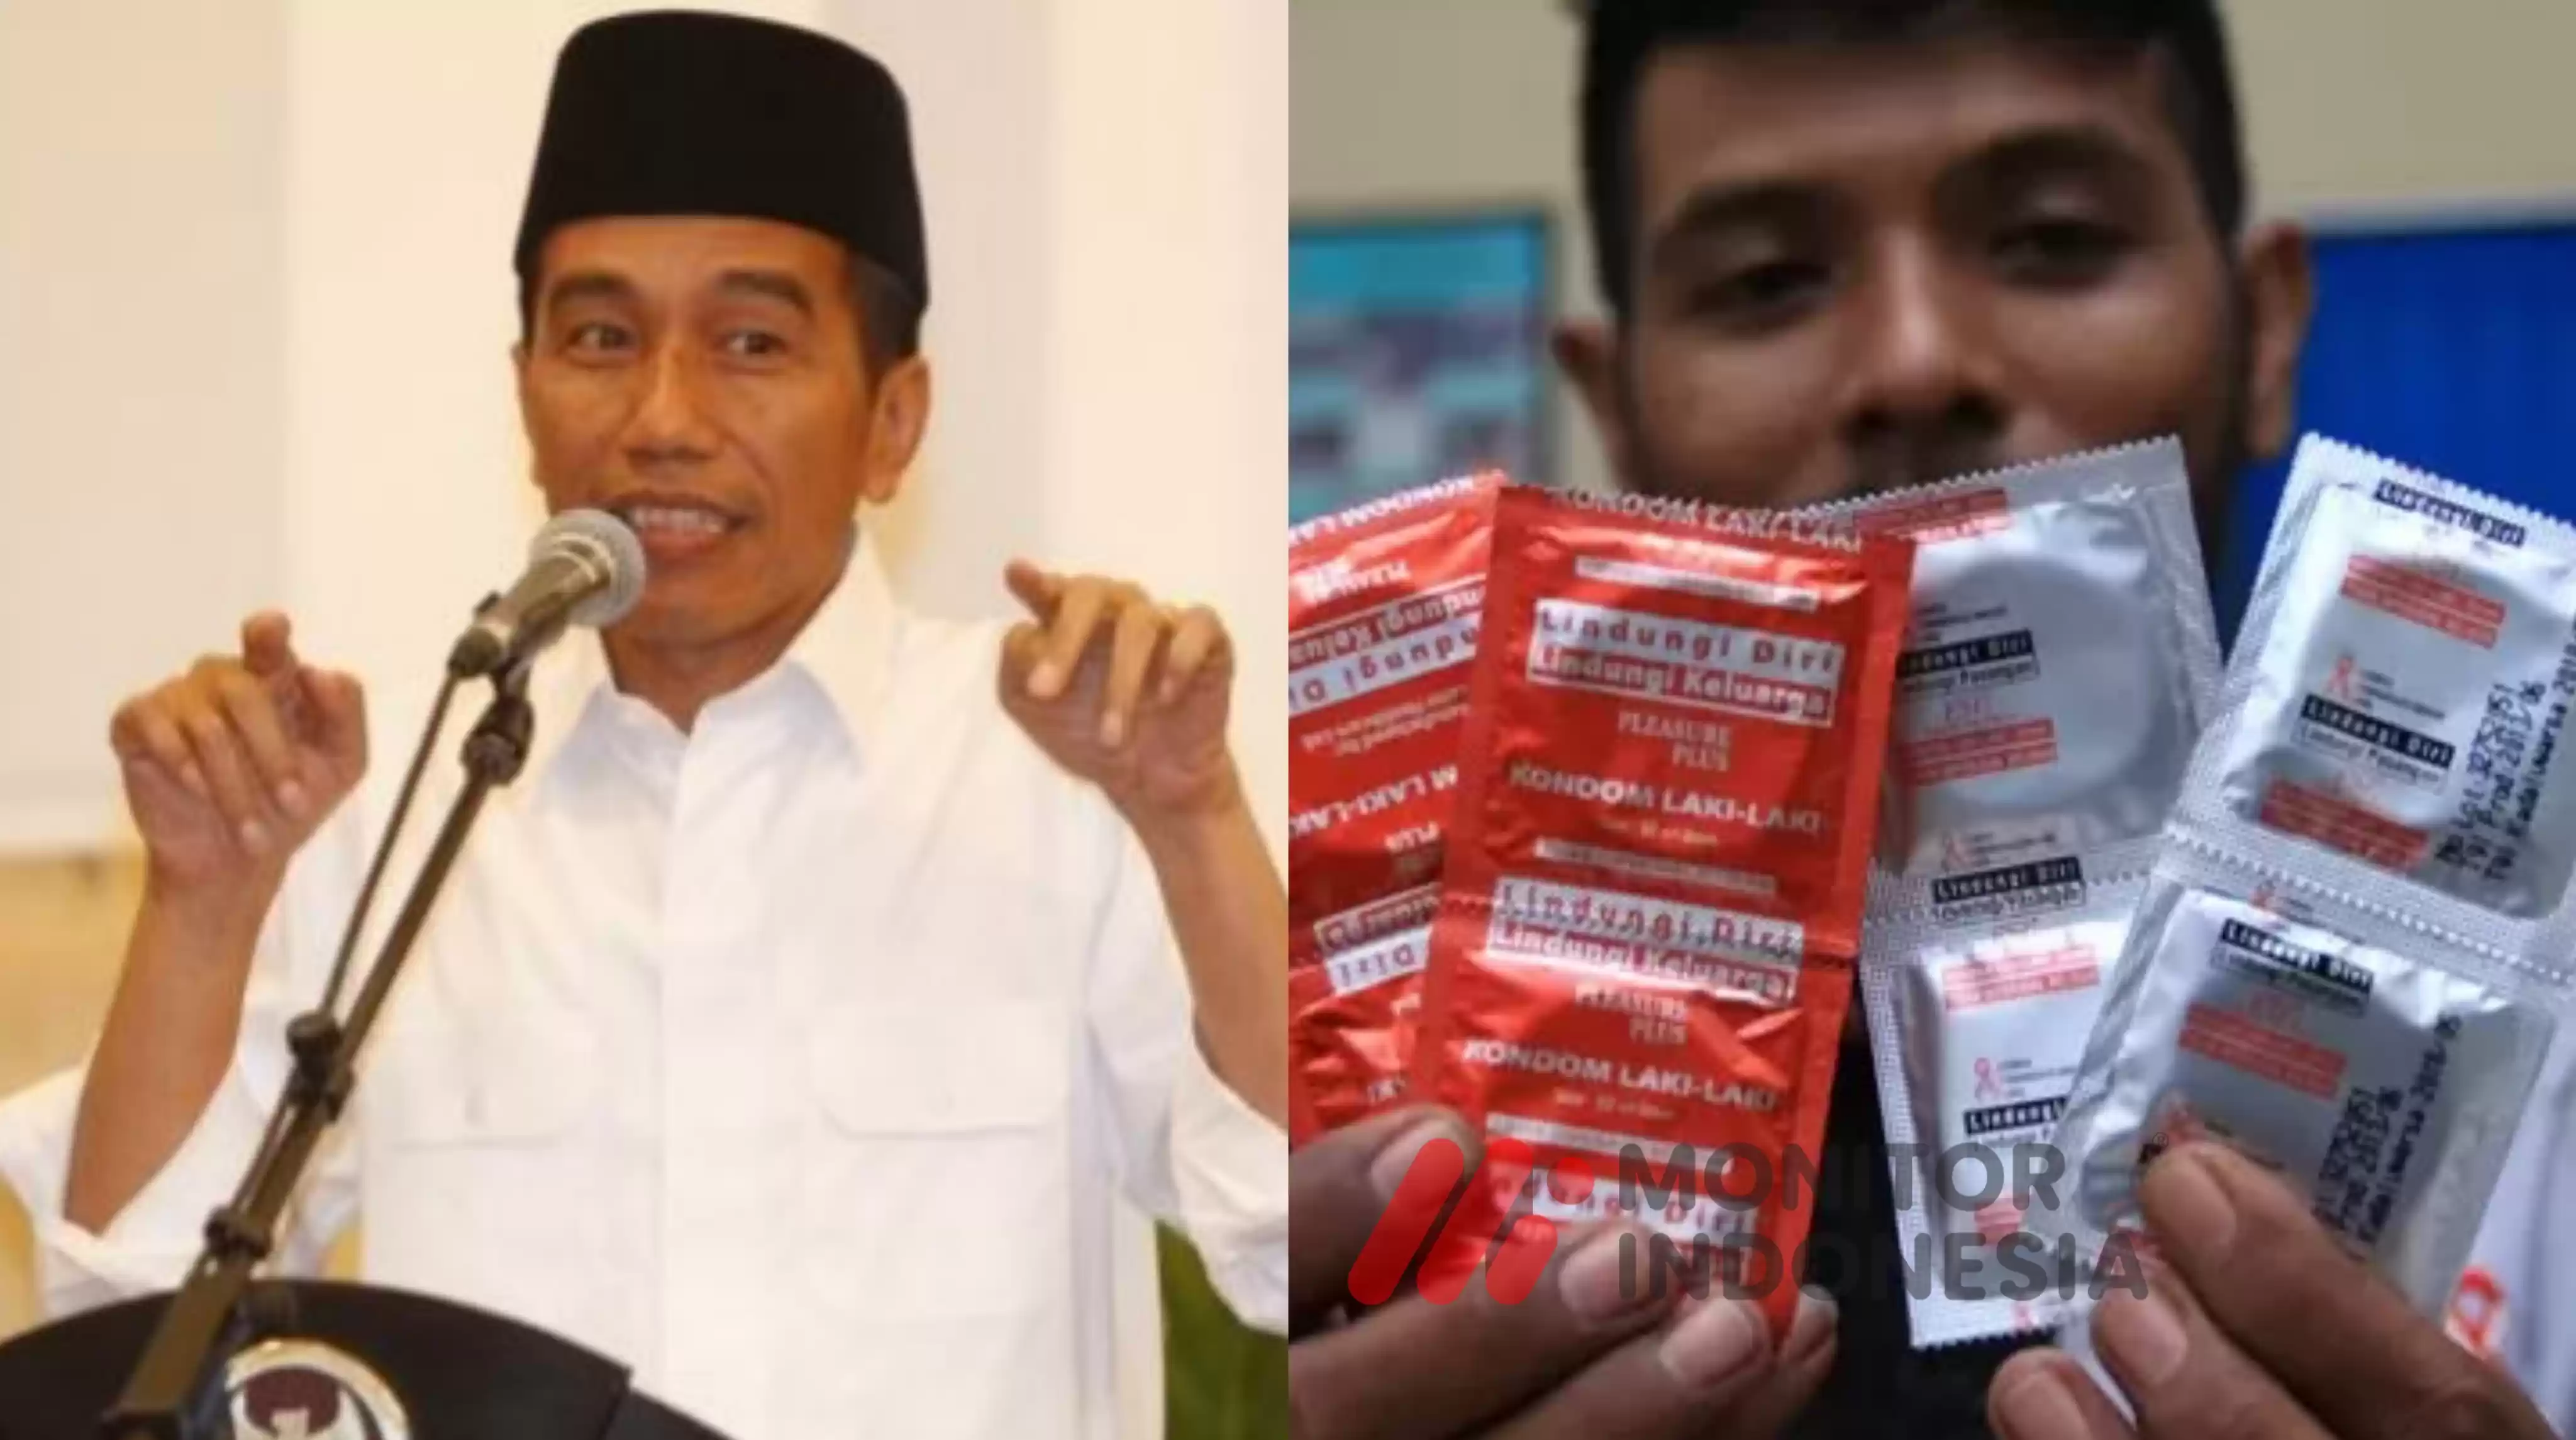 Jokowi Alat Kontrasepsi